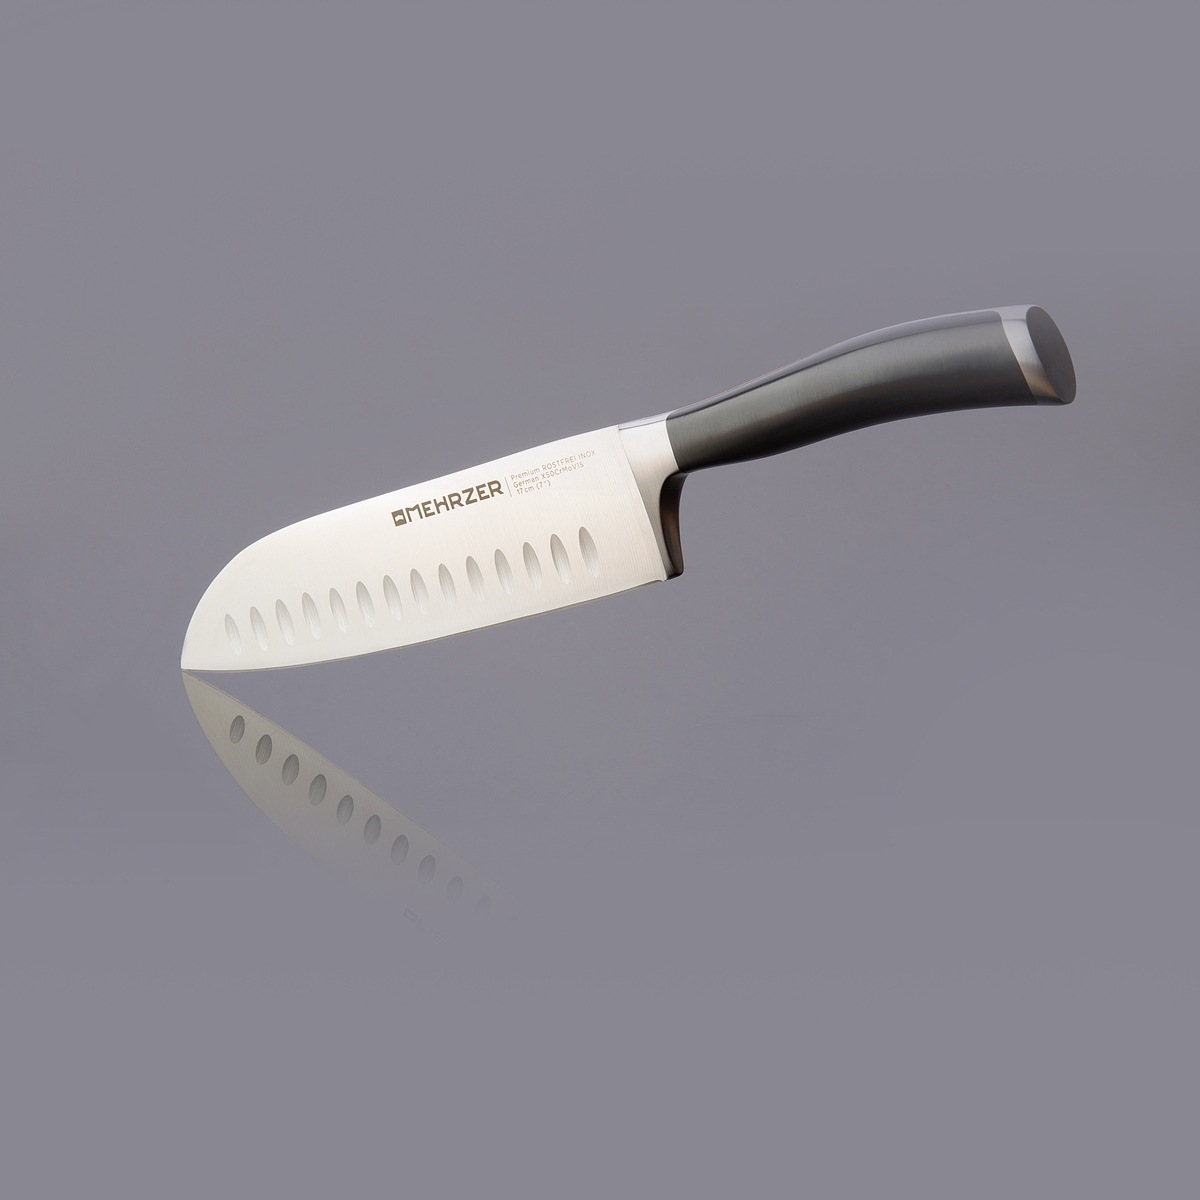 Нож сантоку Mehrzer 17 см, цвет серебристый - фото 2